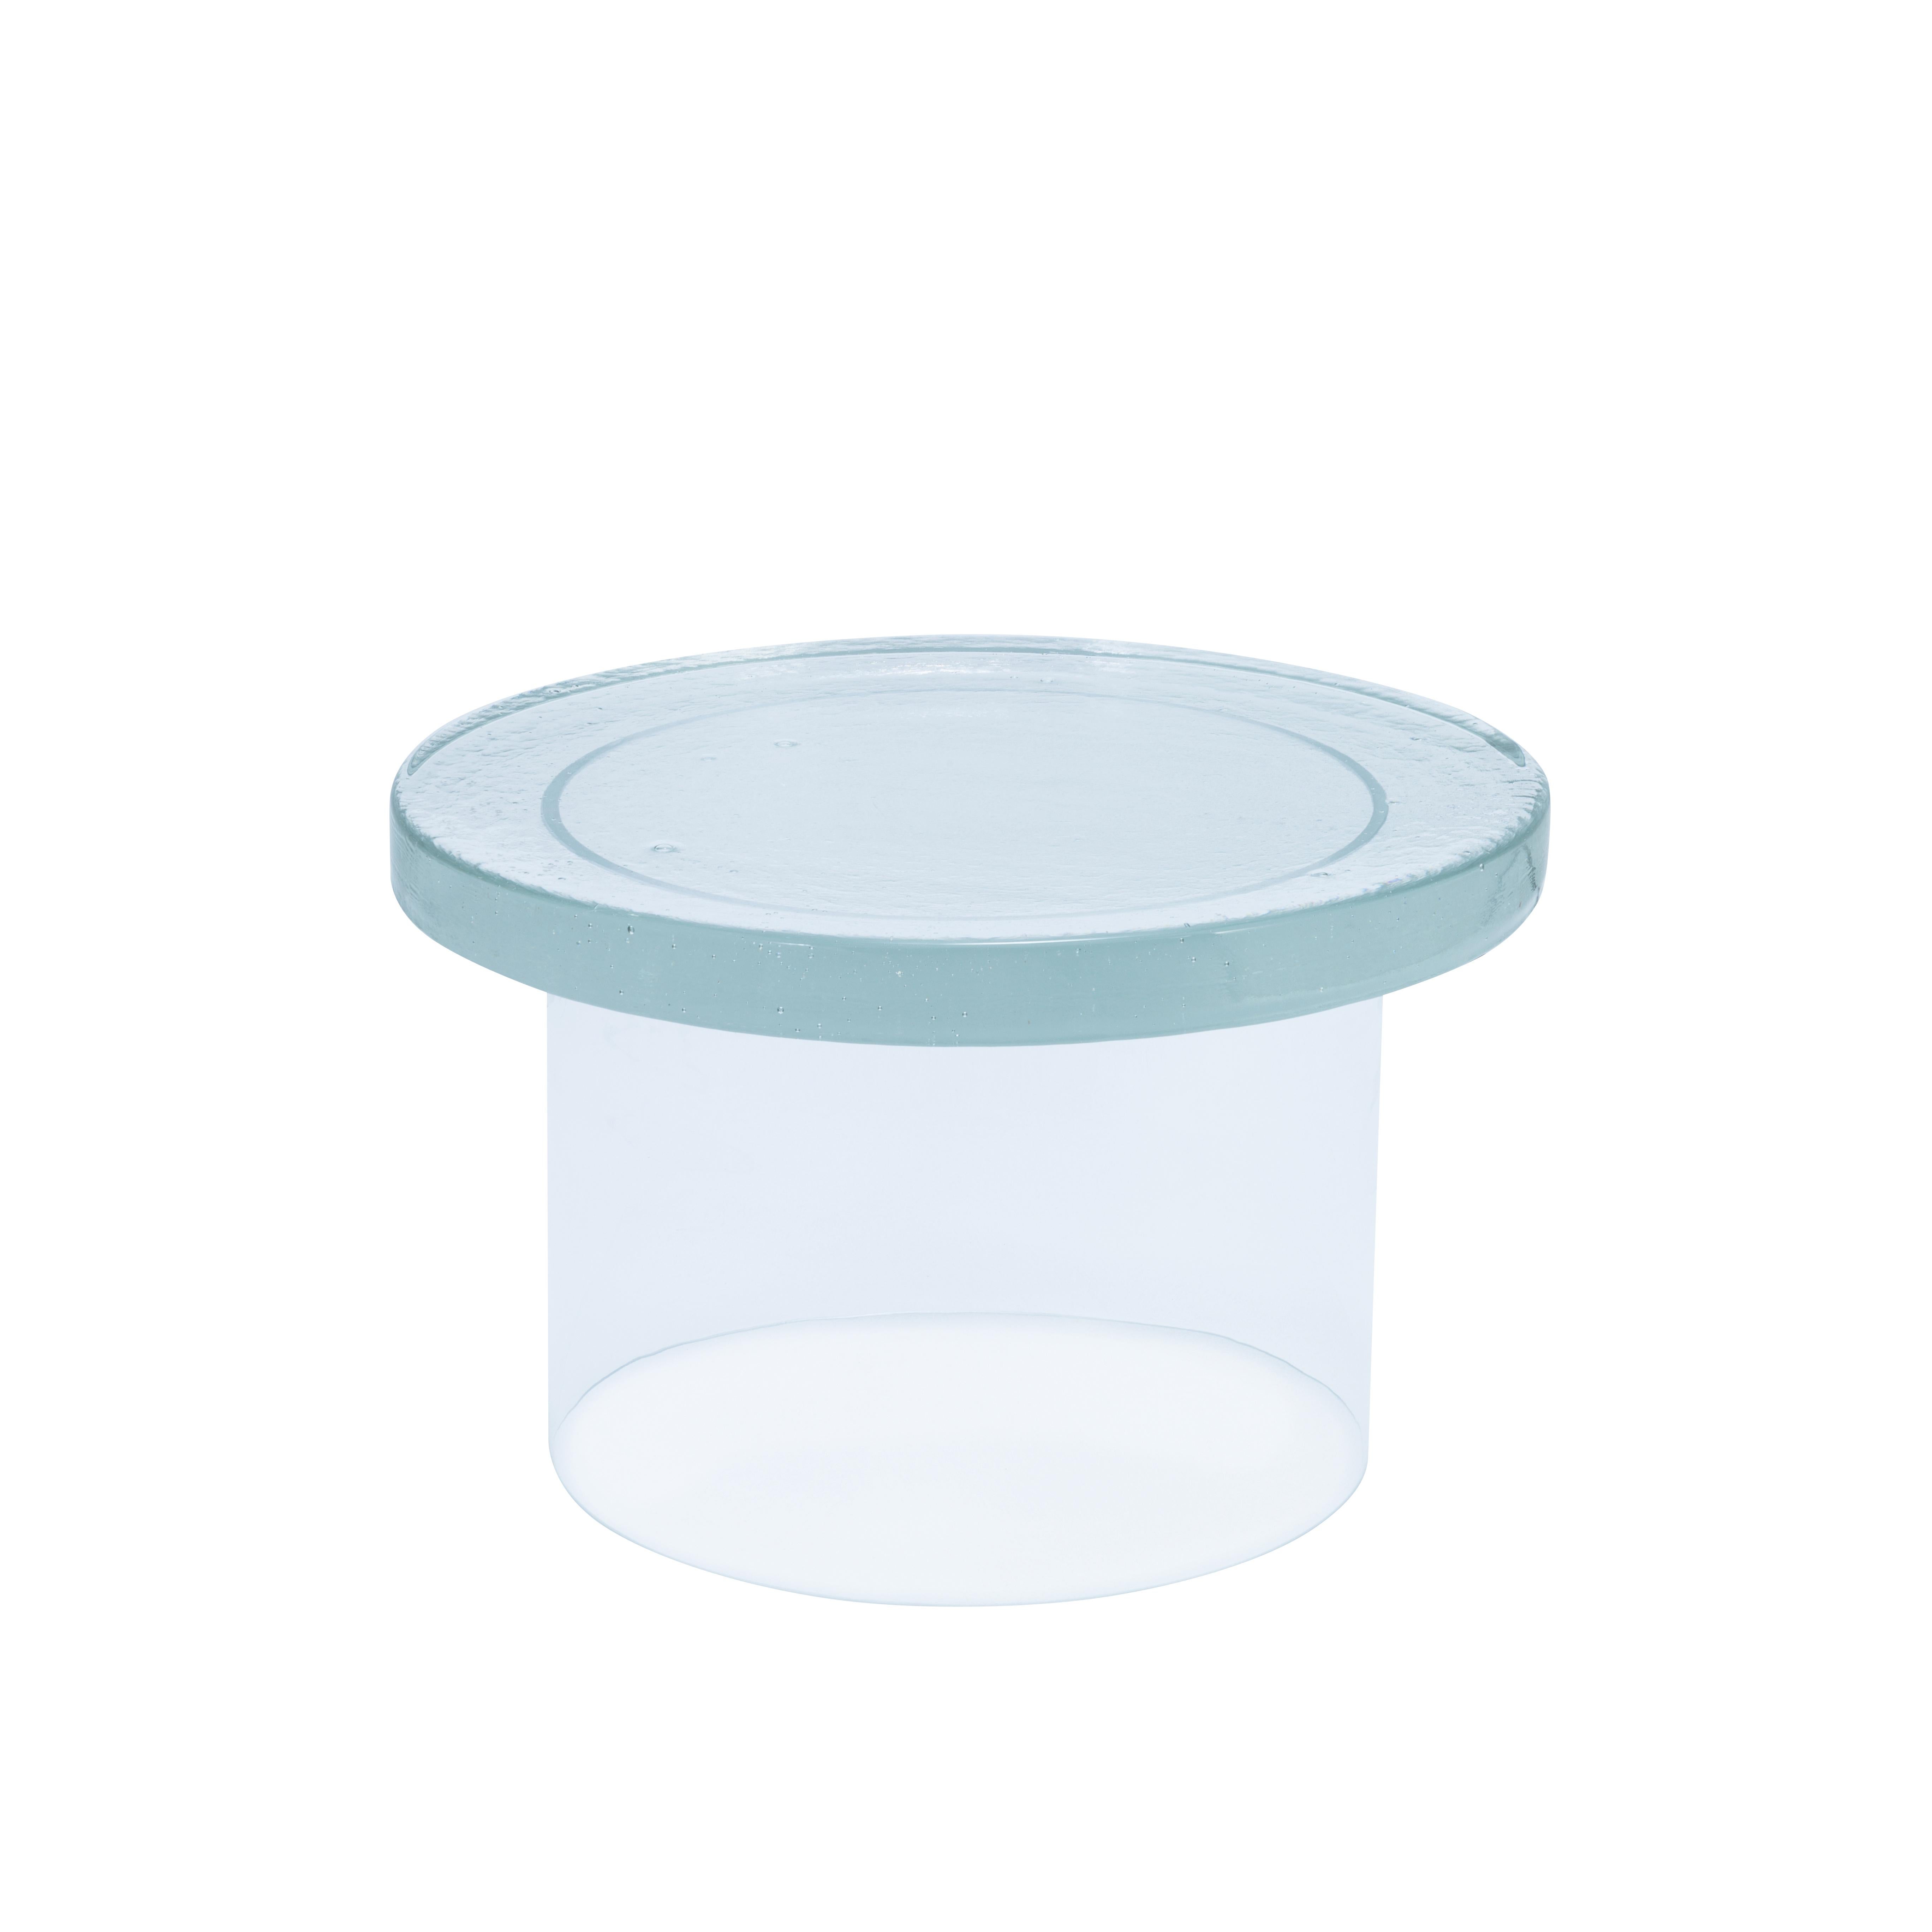 Table basse transparente Alwa three big de Pulpo.
Dimensions : D56 x H35 cm.
MATERIAL : verre moulé et soufflé à la main.

Disponible également en différentes couleurs. 

Normalement, le verre est considéré comme un matériau léger aux arêtes vives.